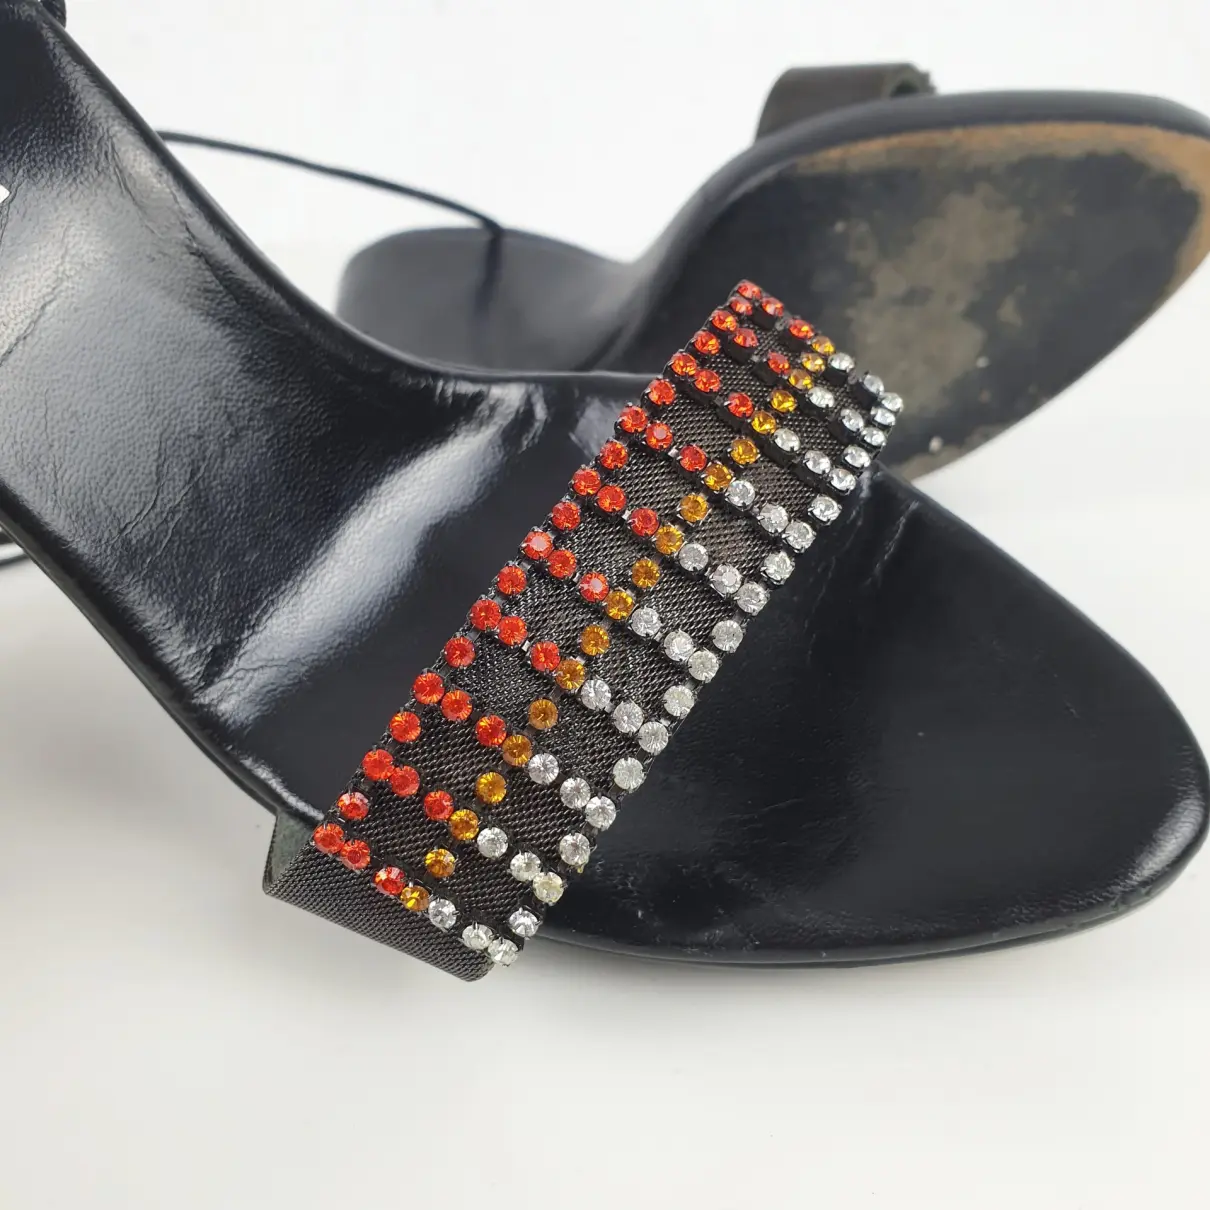 Leather sandal Le Silla